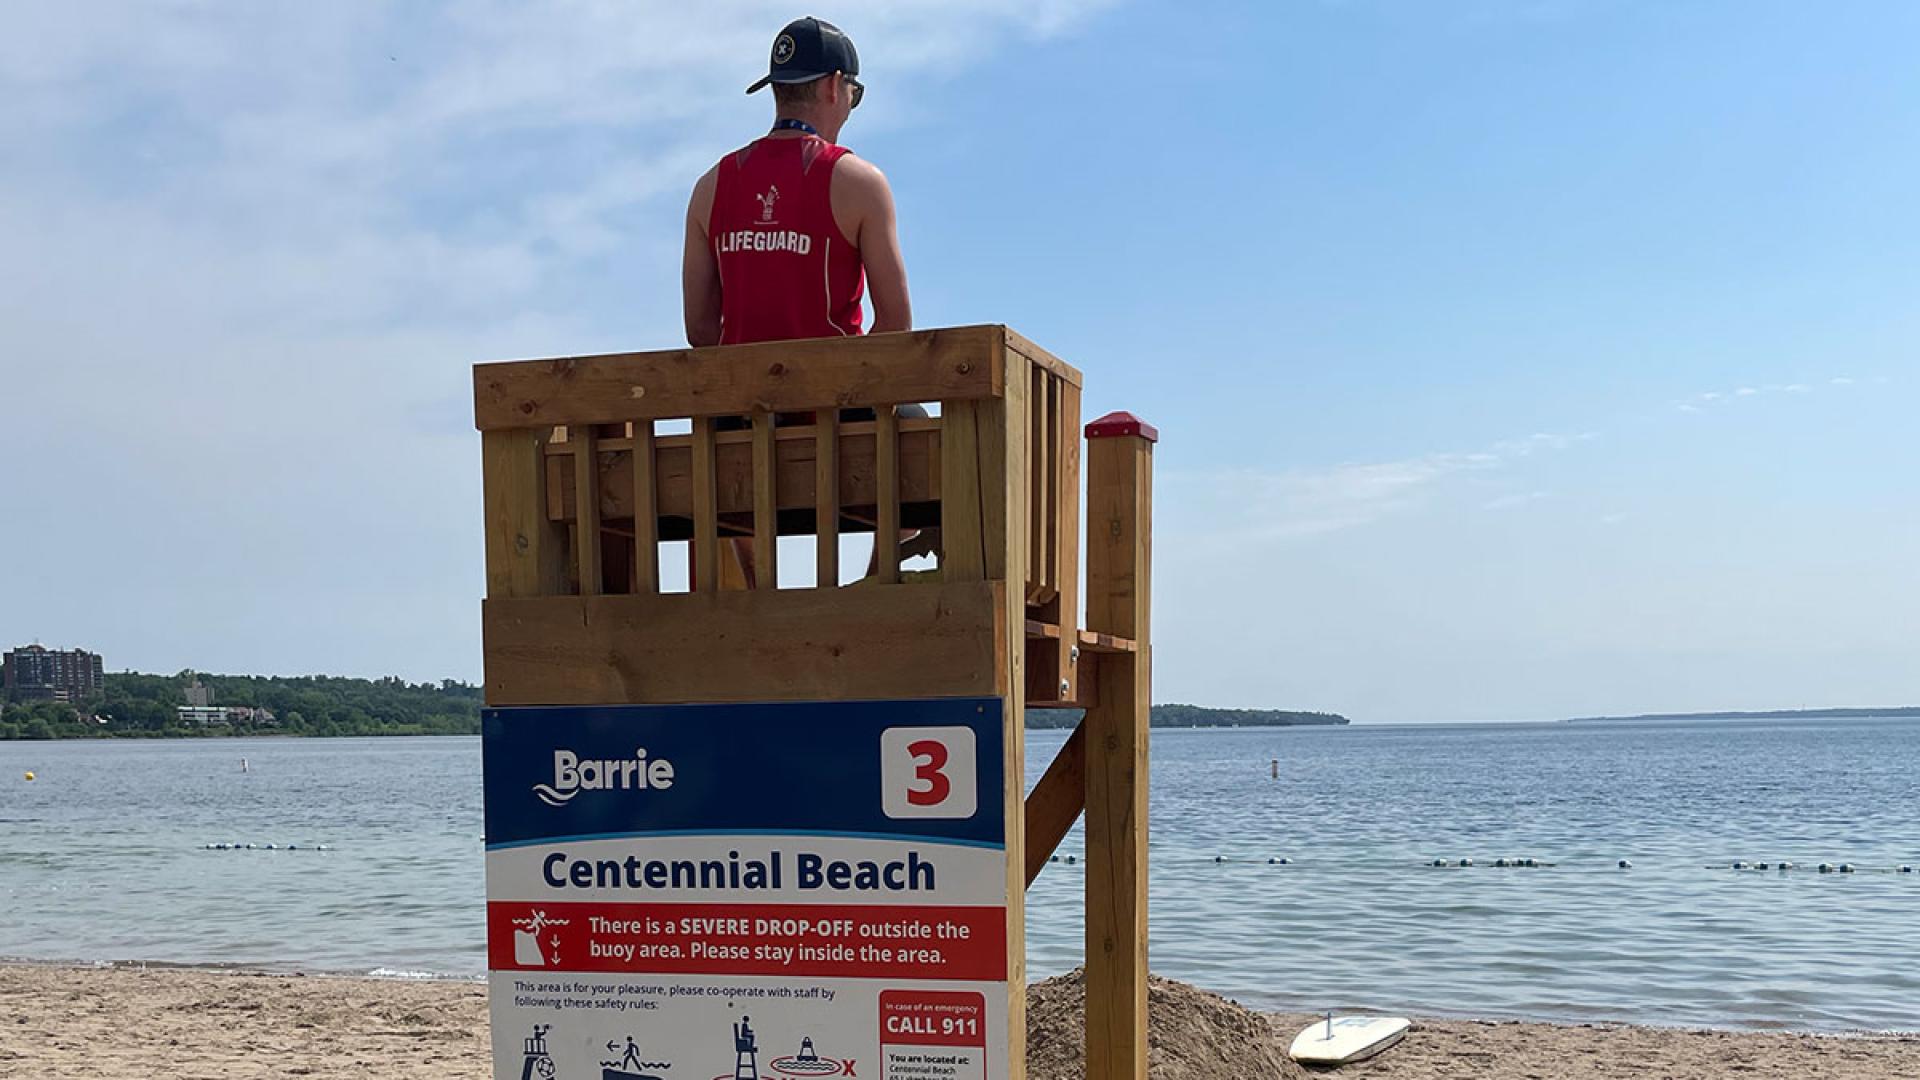 Lifeguard on duty at Centennial Beach